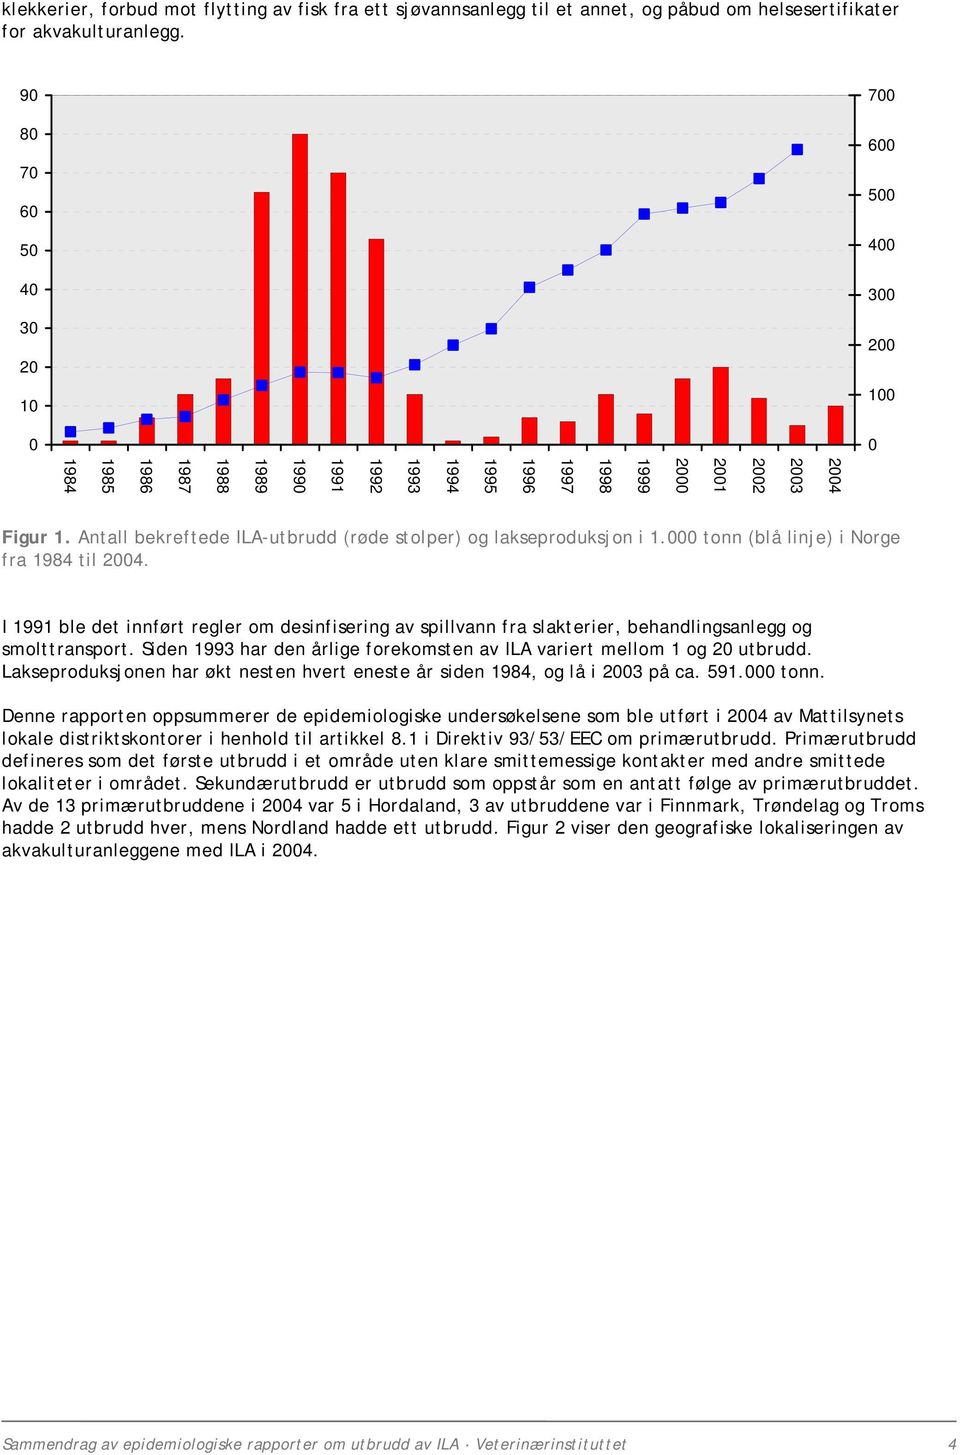 Antall bekreftede ILA-utbrudd (røde stolper) og lakseproduksjon i 1.000 tonn (blå linje) i Norge fra 1984 til 2004.